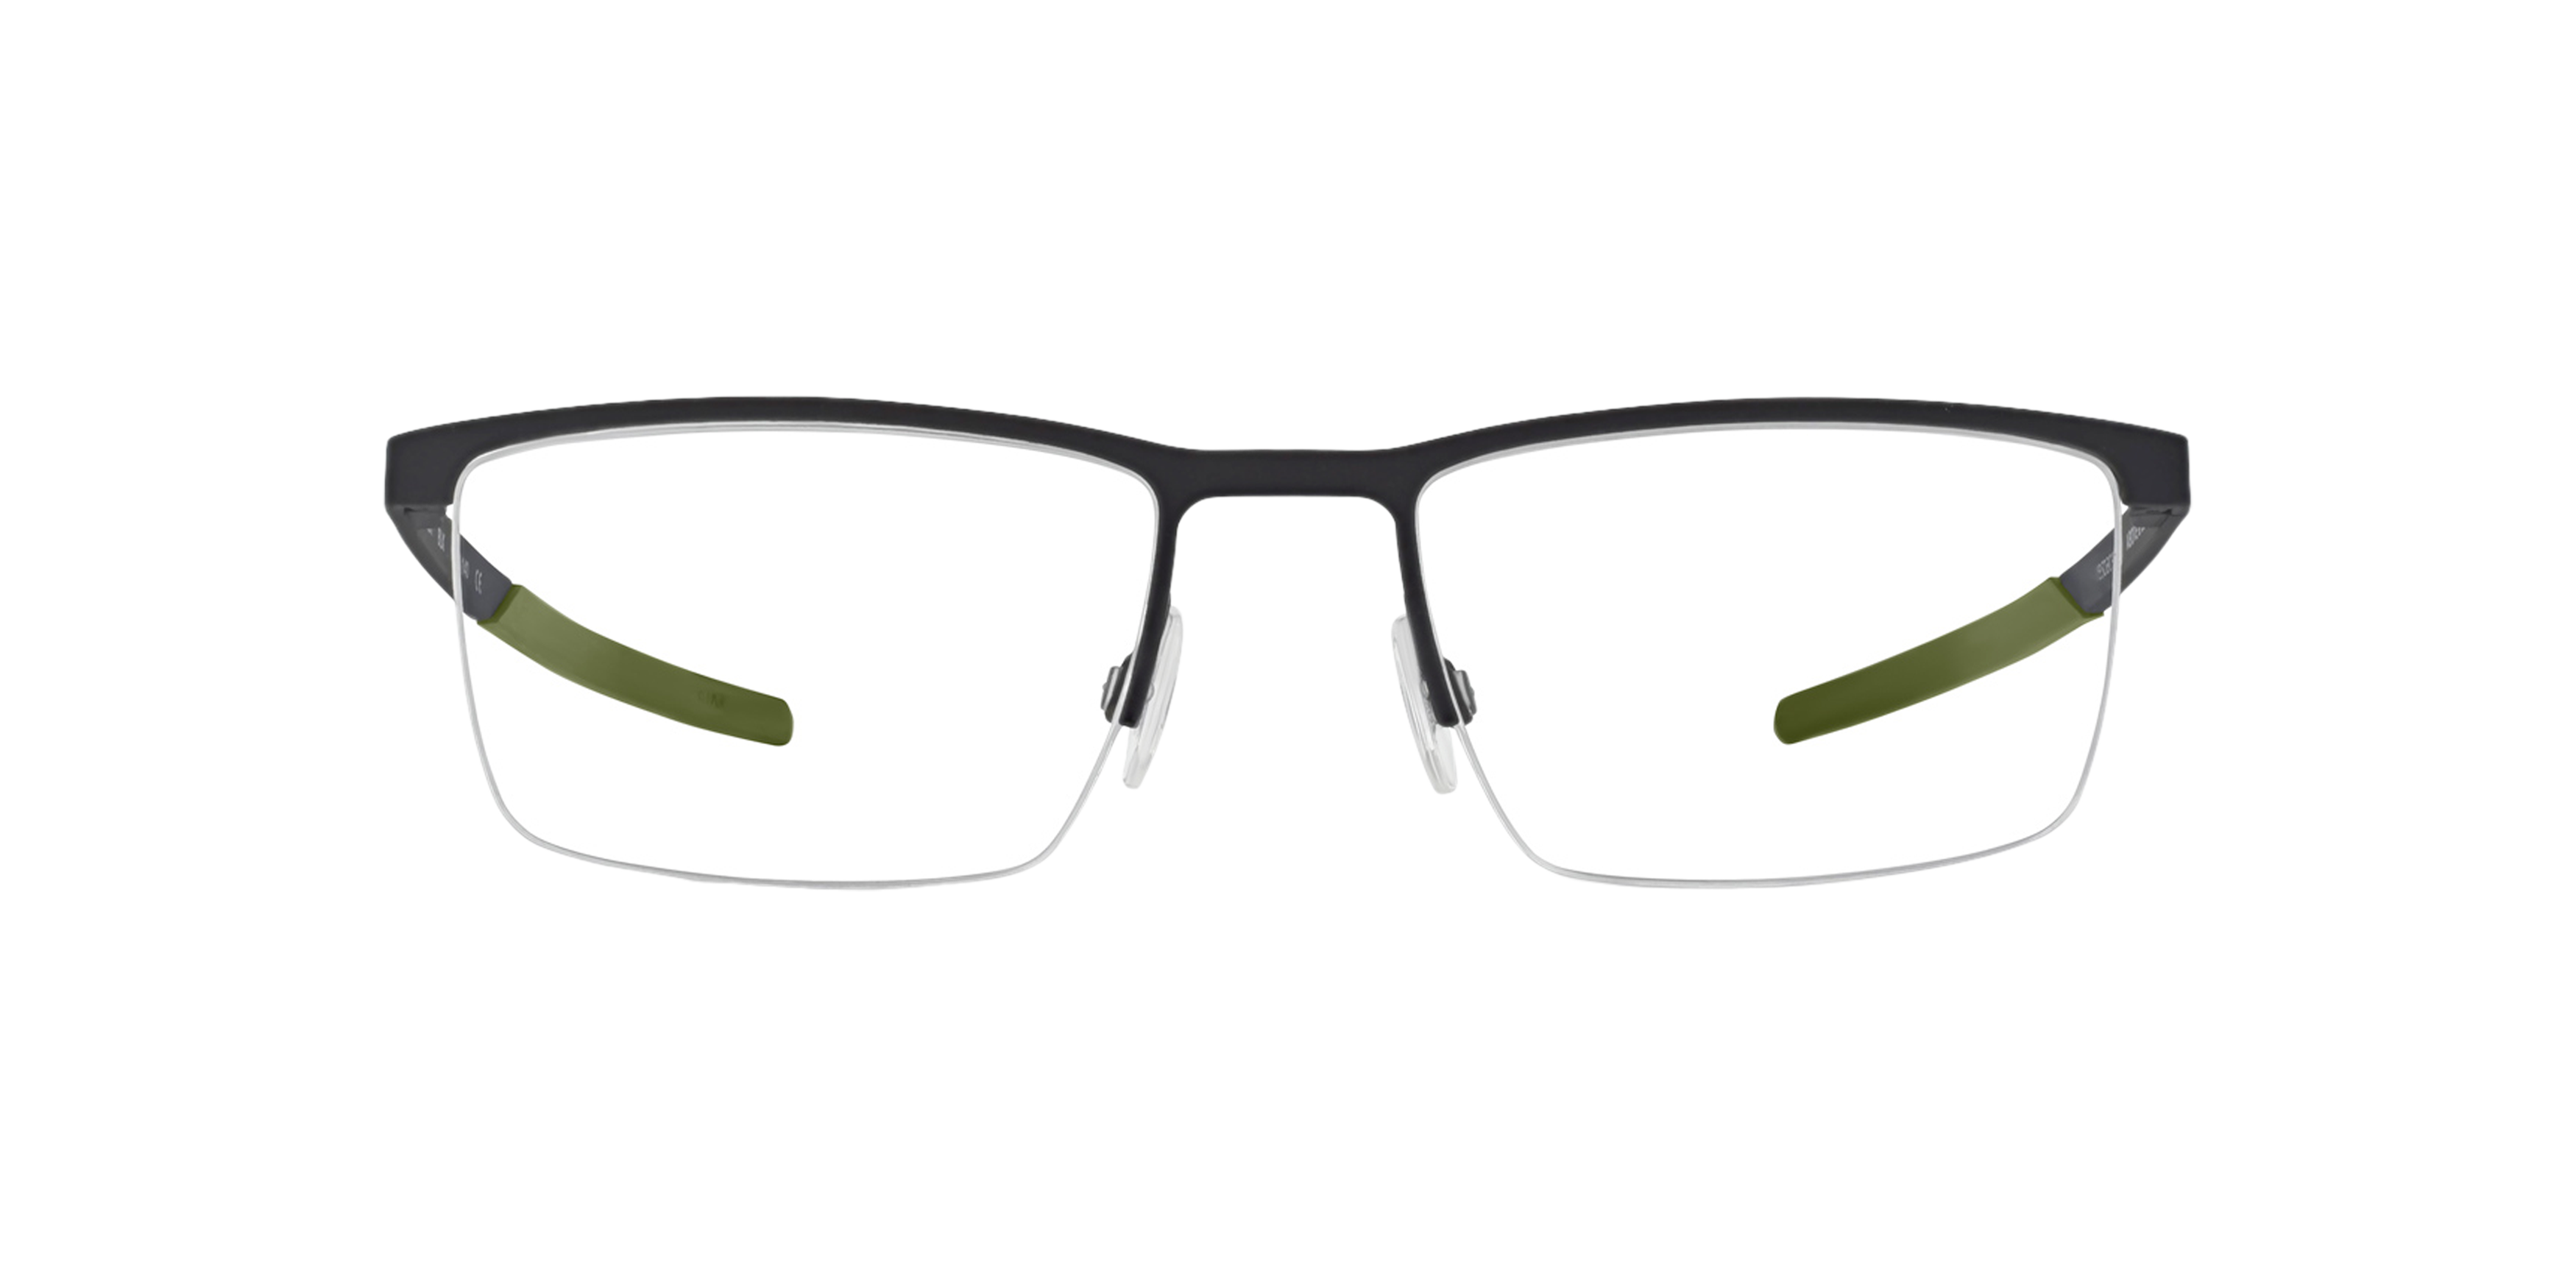 Front Land Rover Miller (BLK) Glasses Transparent / Black